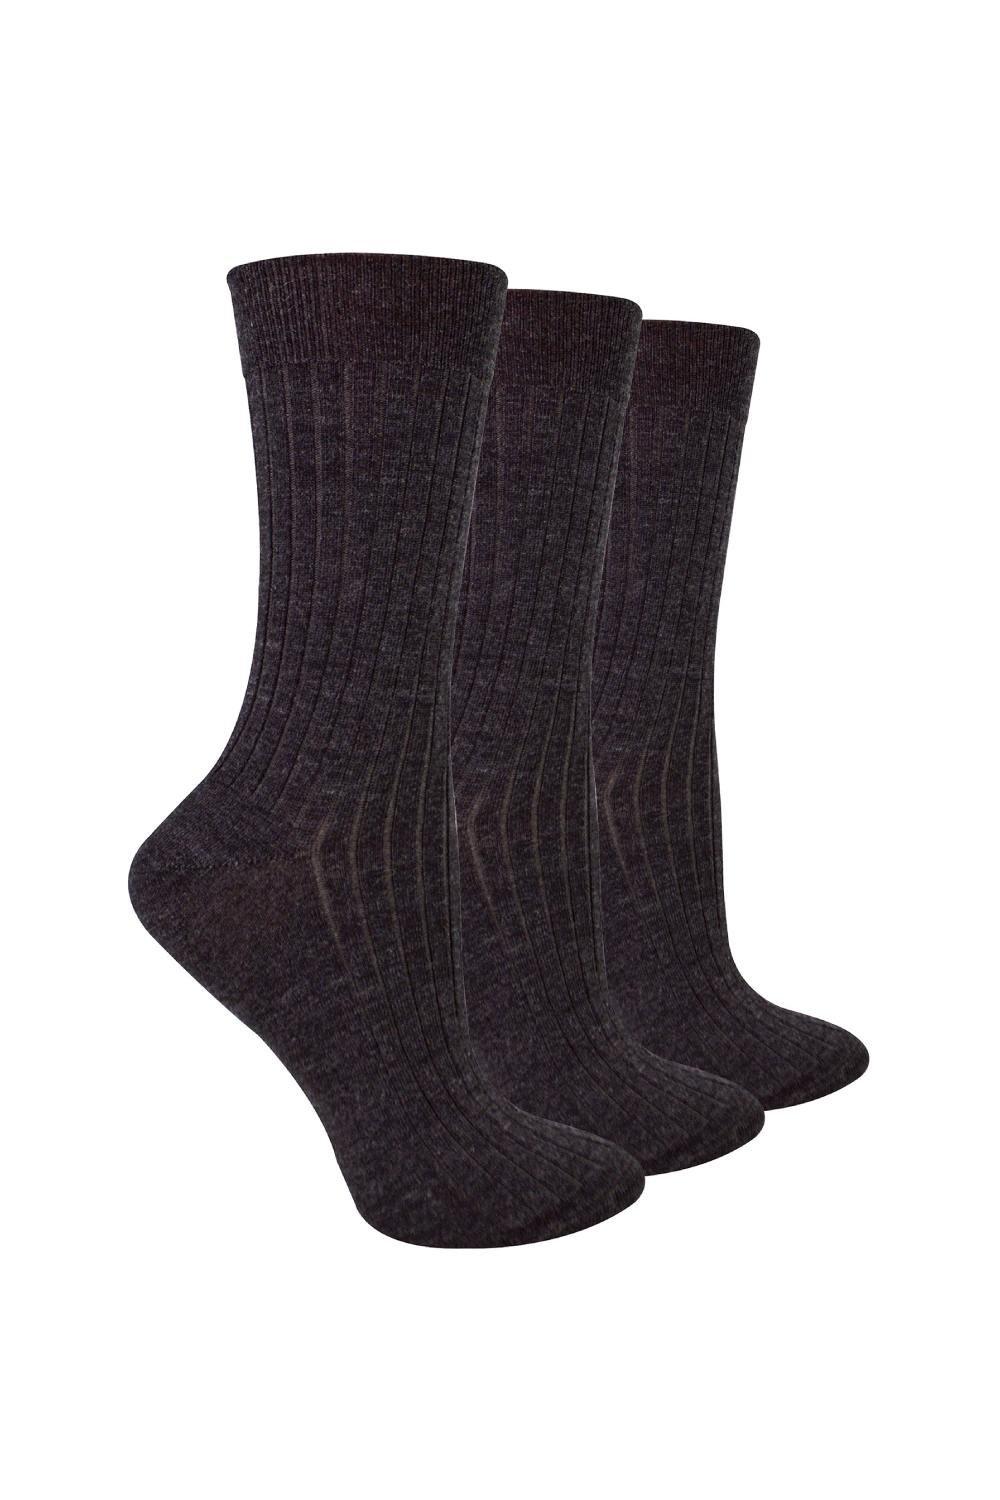 3 Pairs Merino Wool Winter Thick Cushion Warm Boot Socks